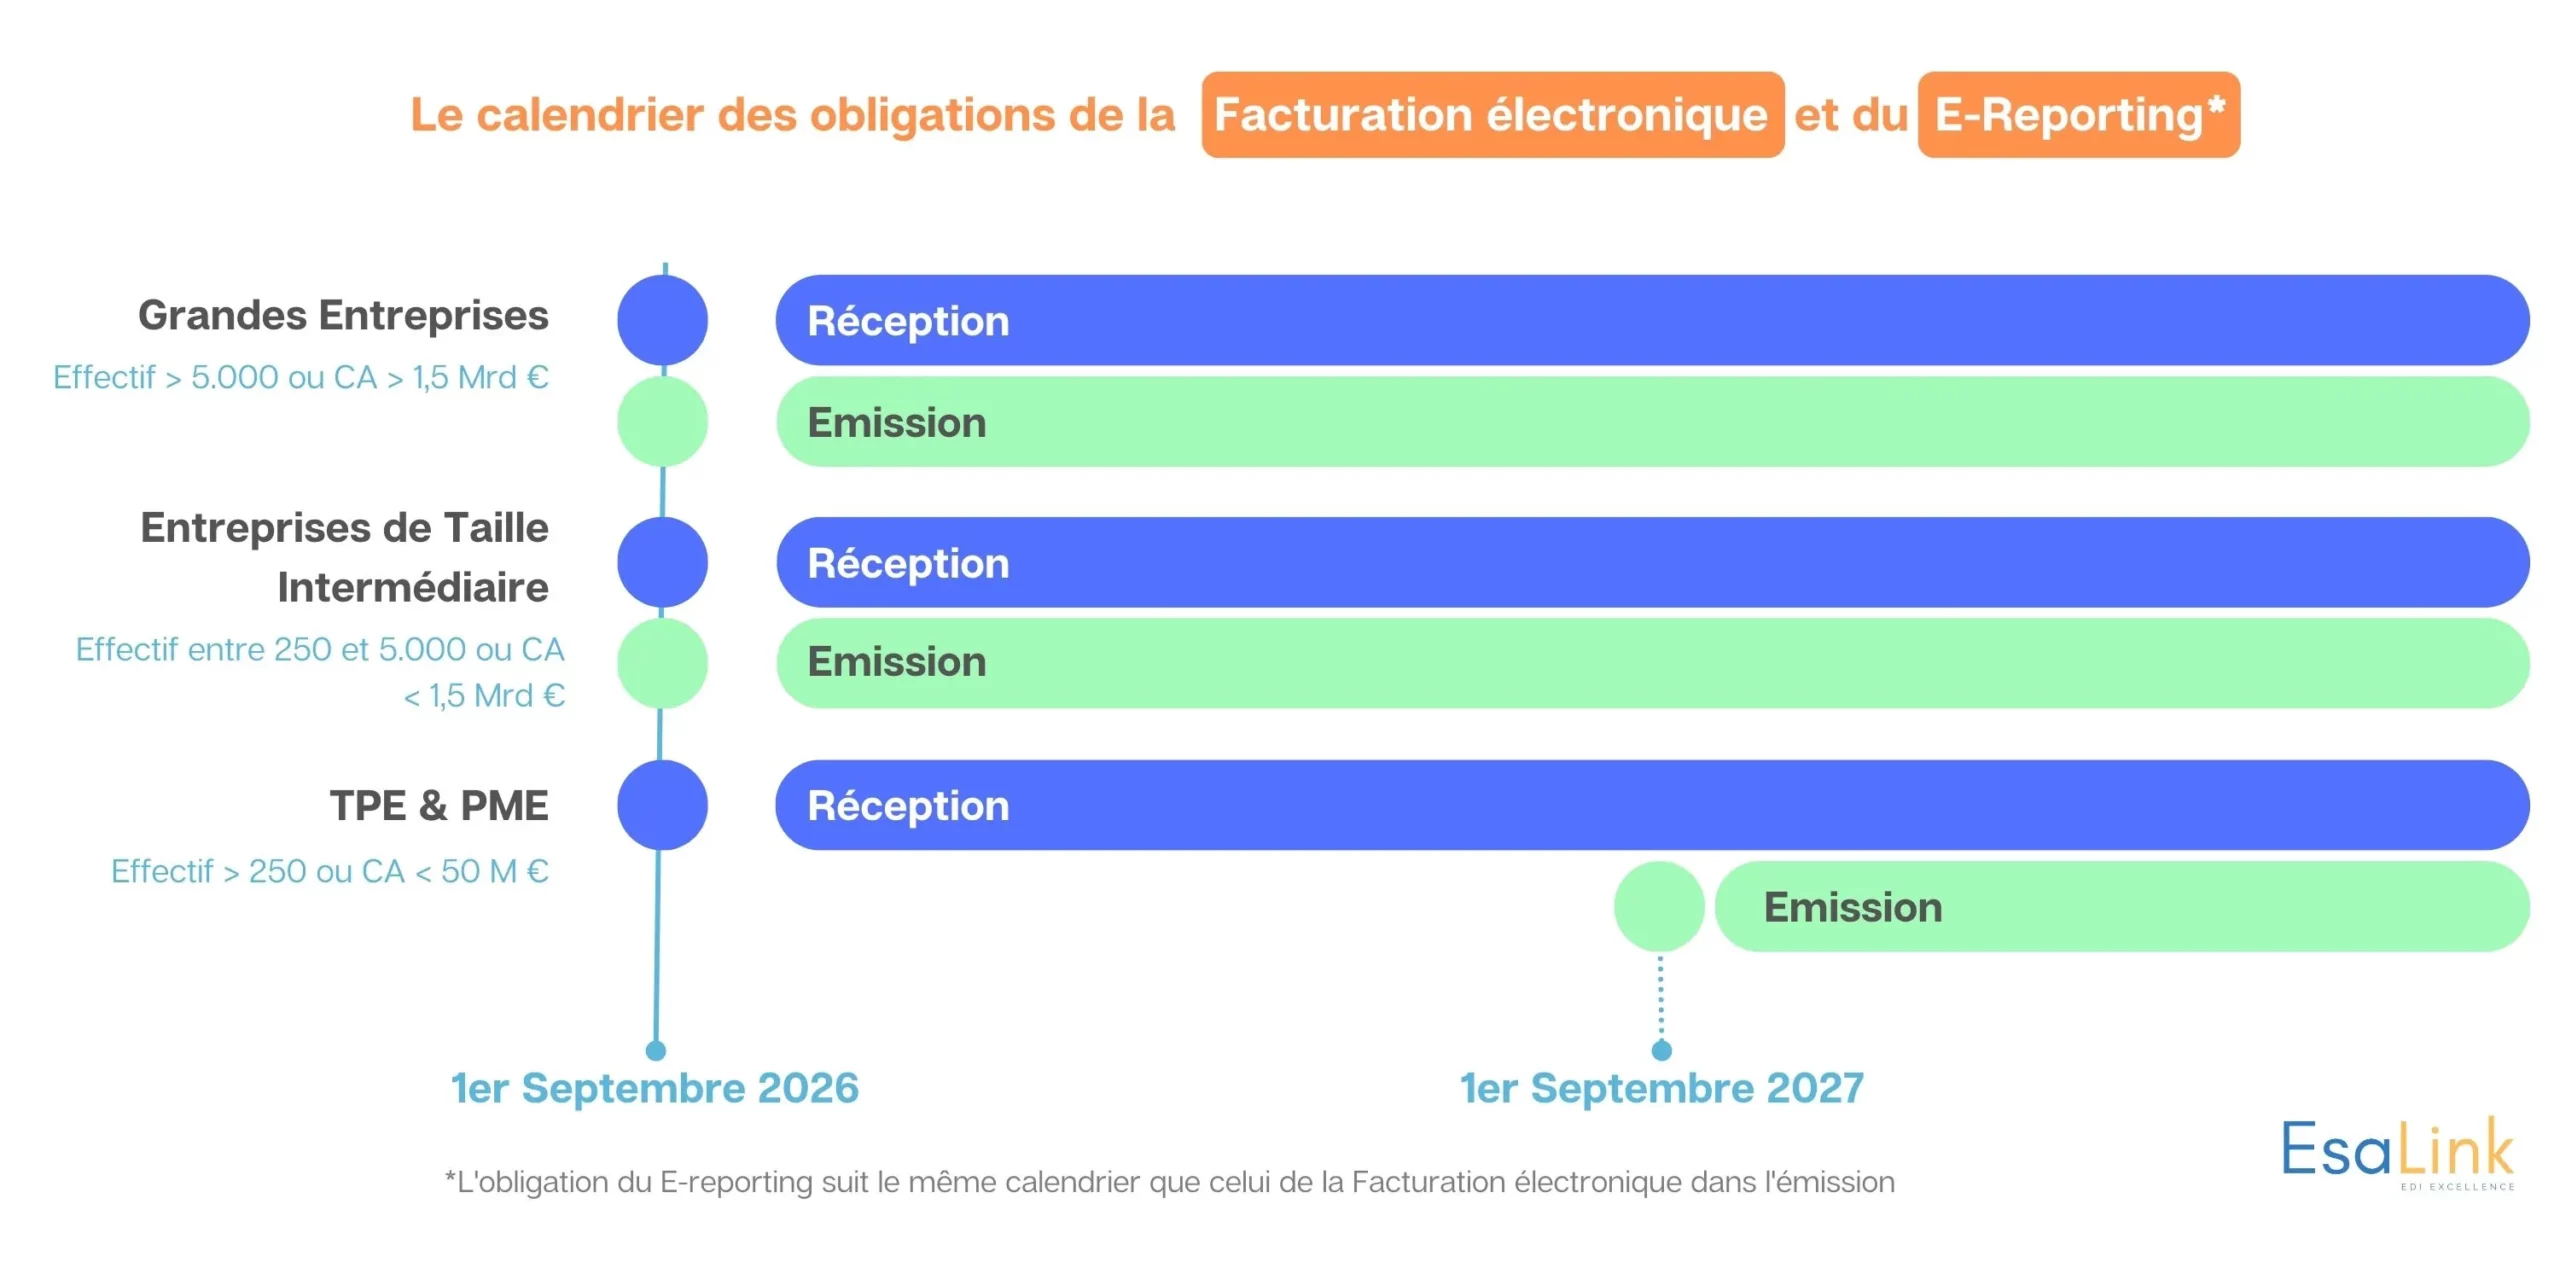 Date d'obligation d'émission et de réception pour les grandes entreprises, ETI, TME & TPE dans le cadre la facturation électronique en France